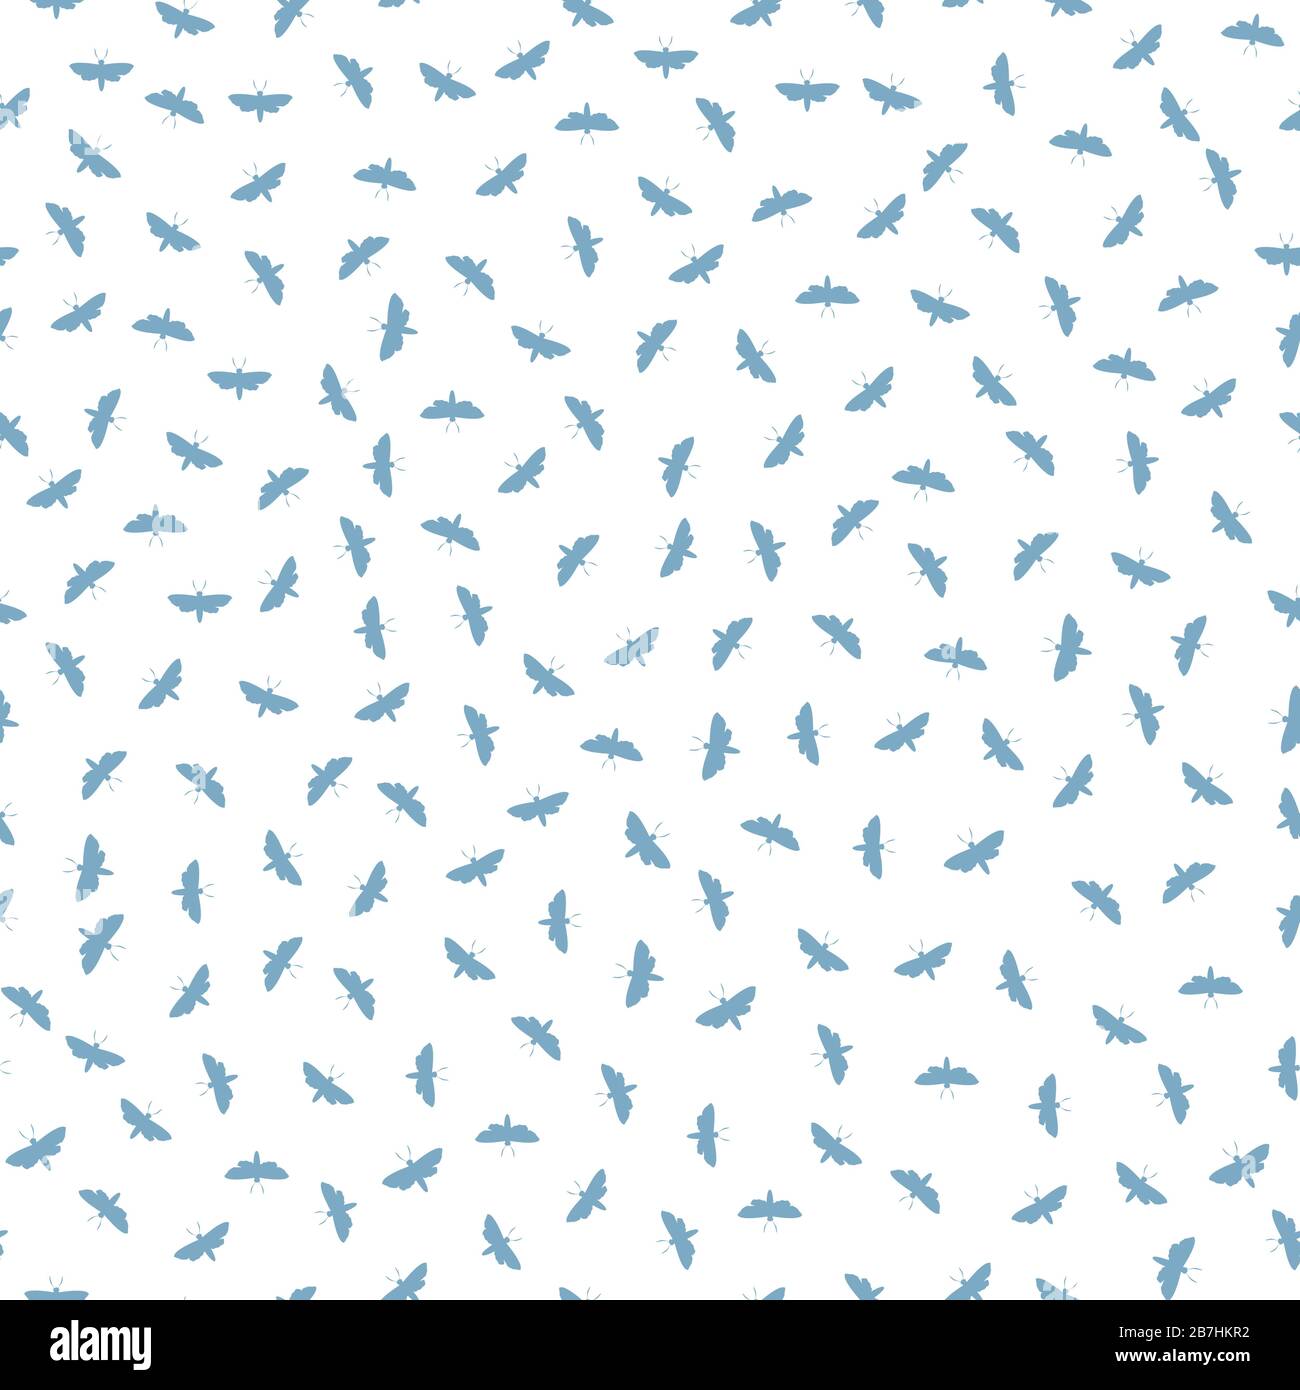 Sfondo del pattern vettoriale senza giunture Ditsy Butterfly. Illustrazione della mota di volo di giorno. Insetti costieri scozzesi ripetono sfondo bianco blu. Stampa completa Illustrazione Vettoriale